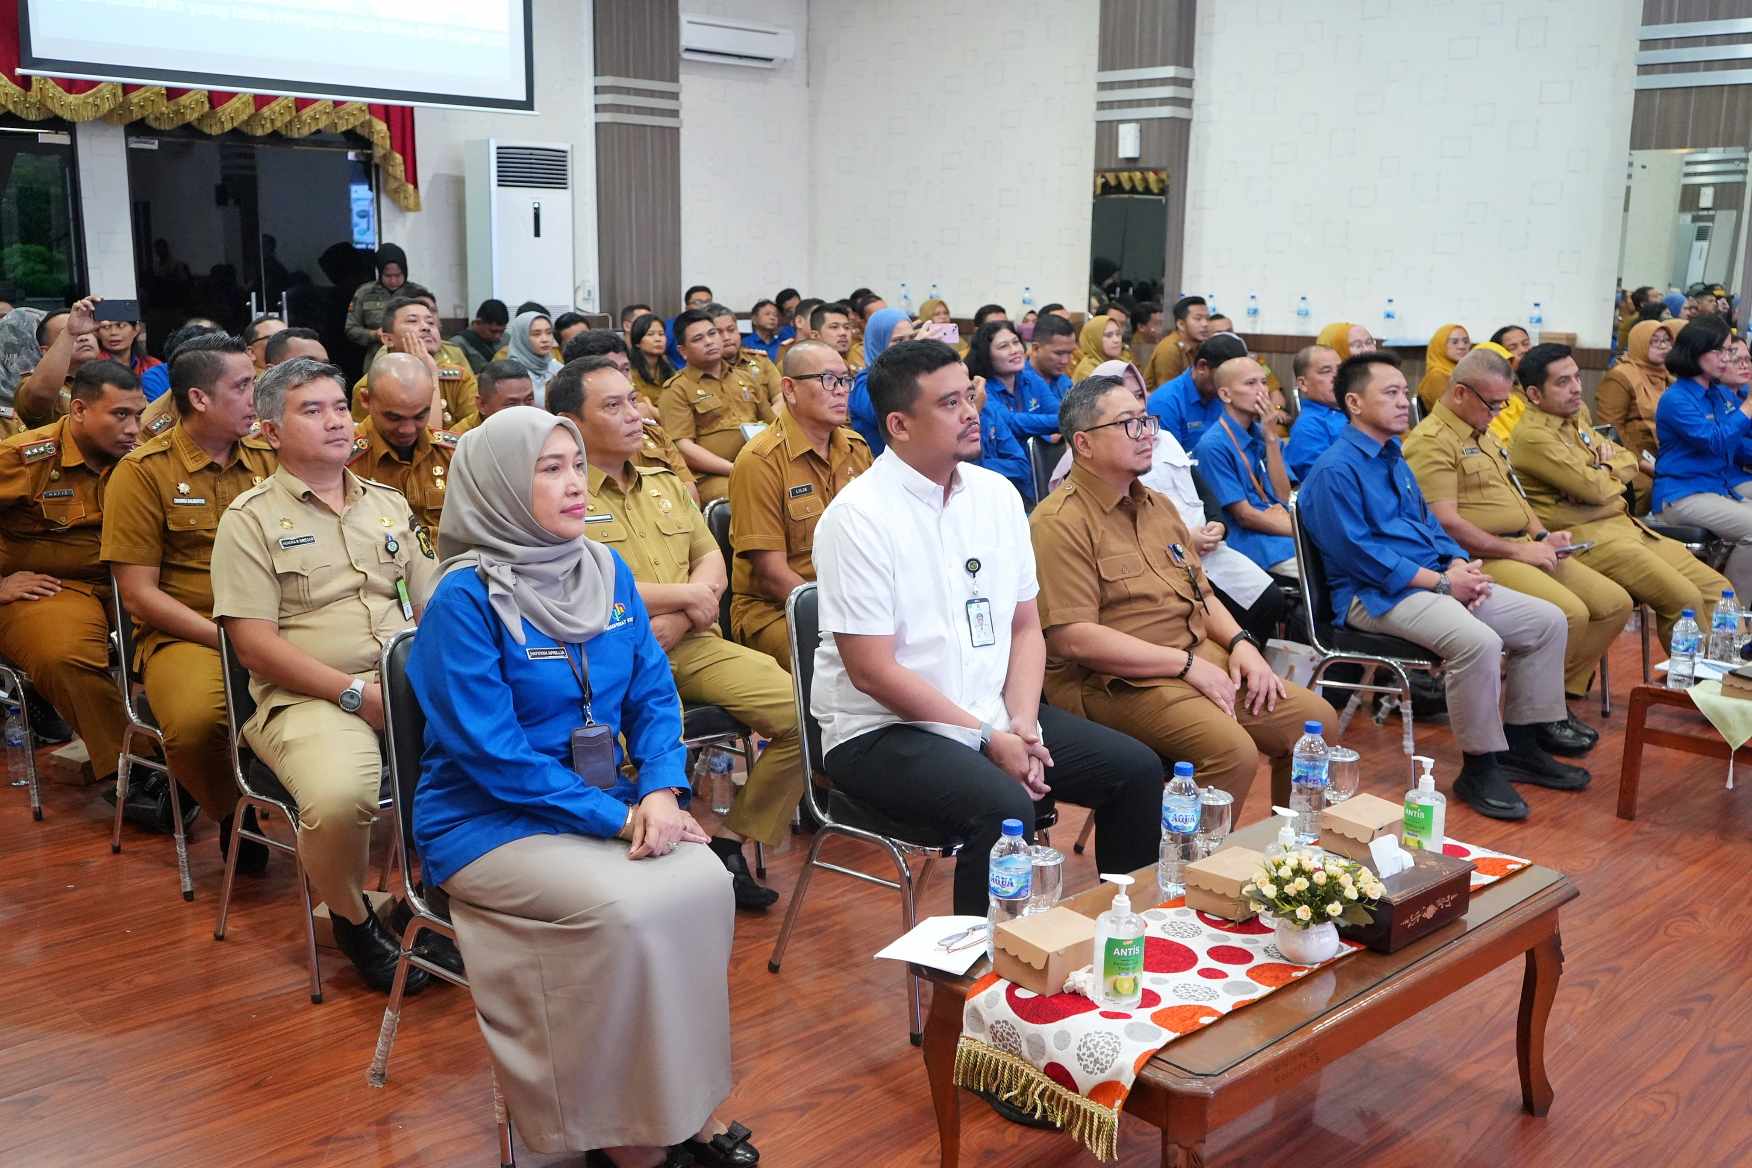 Launching Program Satu Kecamatan Satu Kelurahan Cantik, Wali Kota Medan Data Real Menjadi Sumber Utama Pembangunan Yang Baik